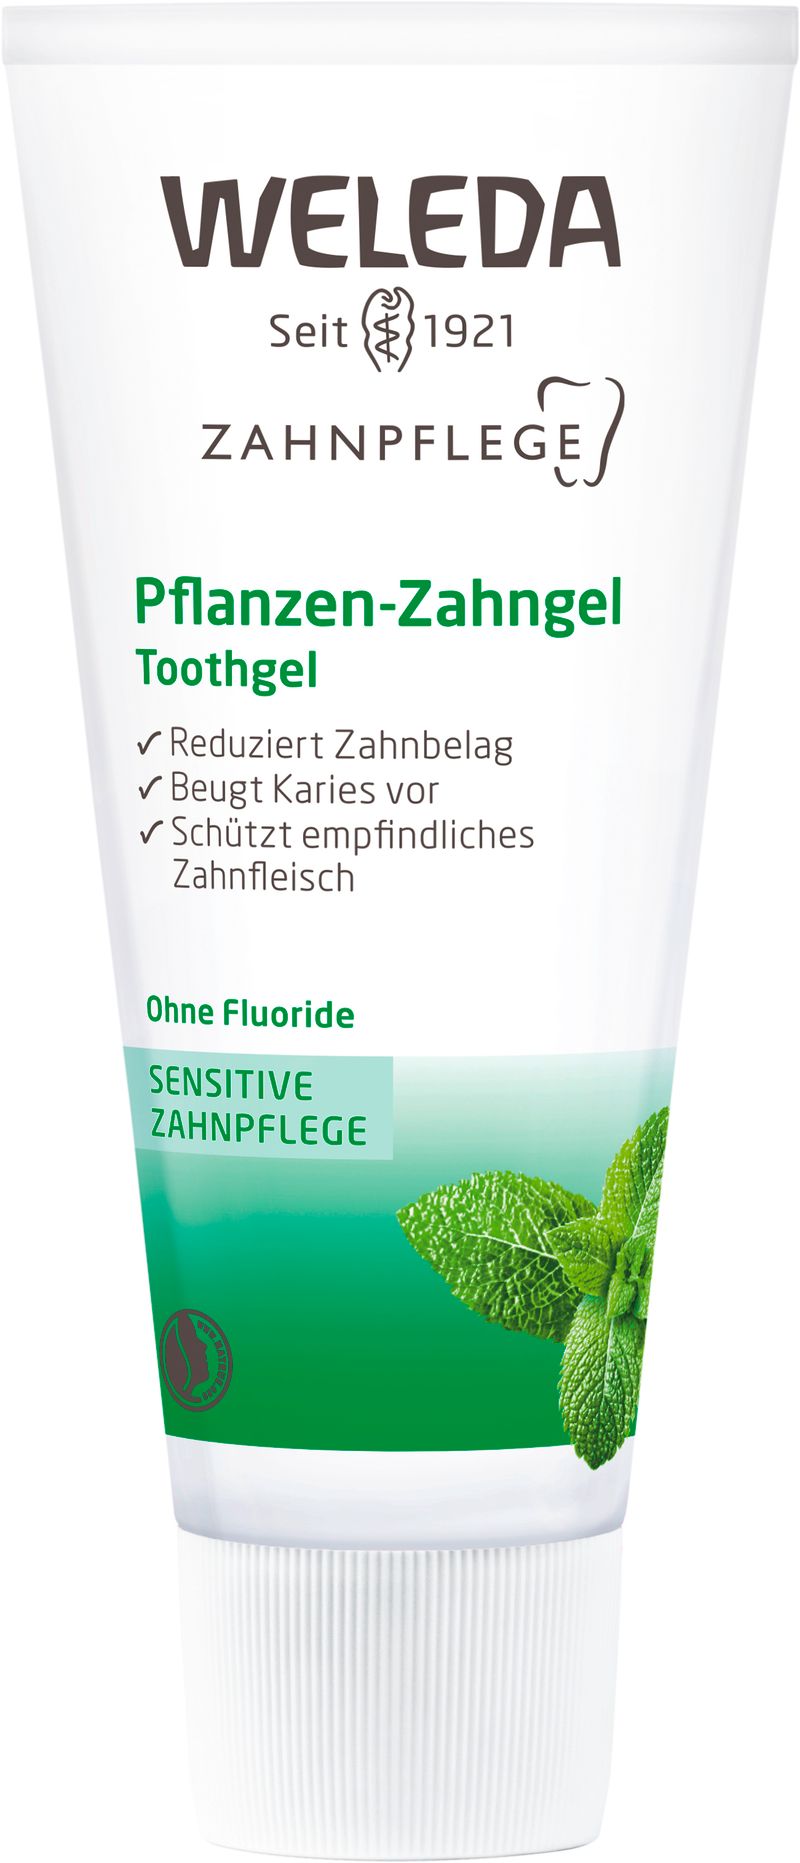 Pflanzen-Zahngel